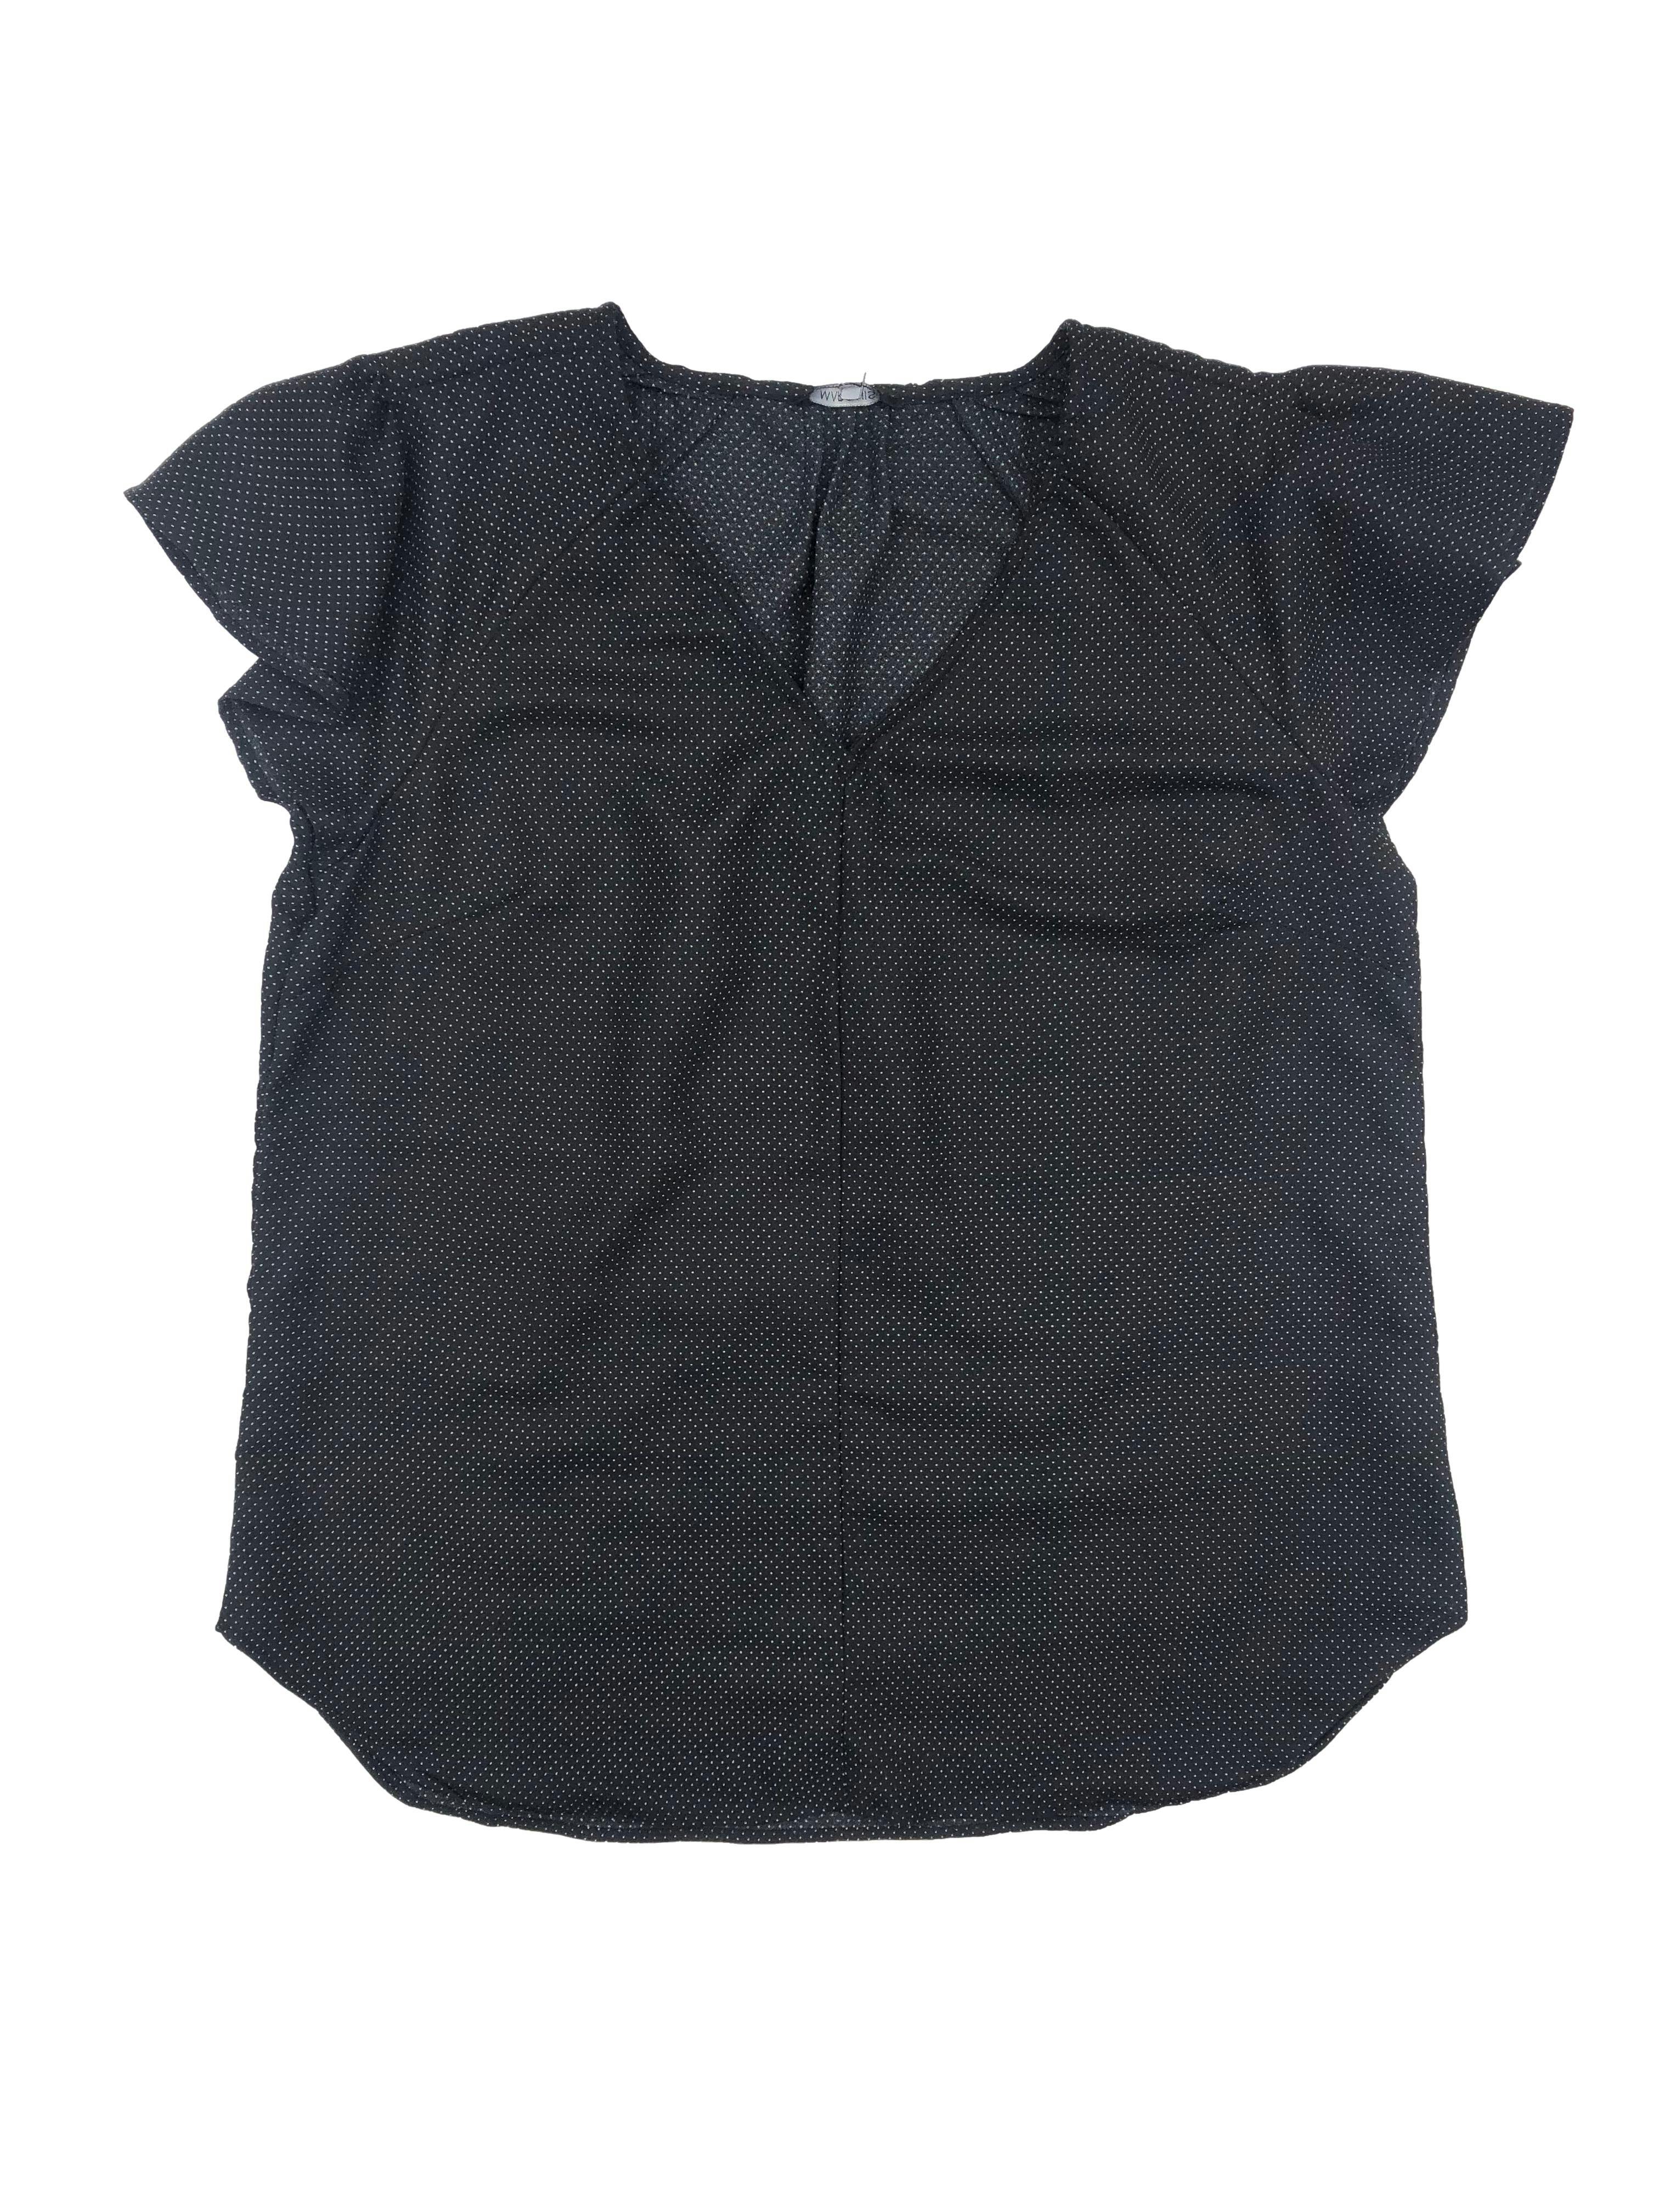 Blusa Marquis negra con puntos blancos, pliegues en hombros y mangas volantes, escote en V. Busto 108cm, Largo 68cm